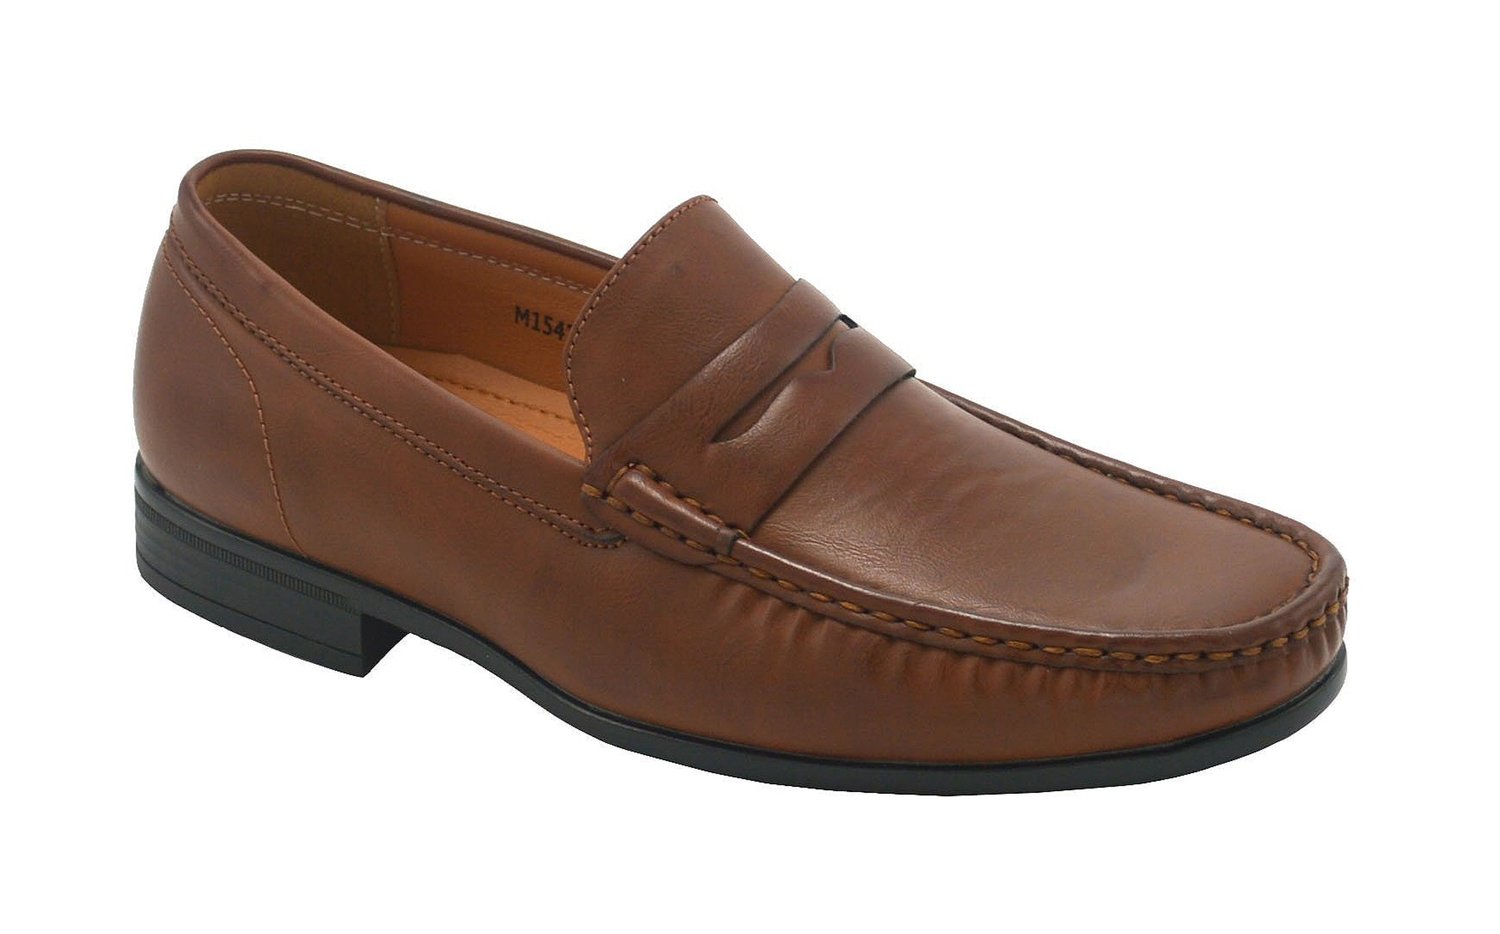 Wholesale Men's Shoes For Men Dress Loafer Bernard NGM1